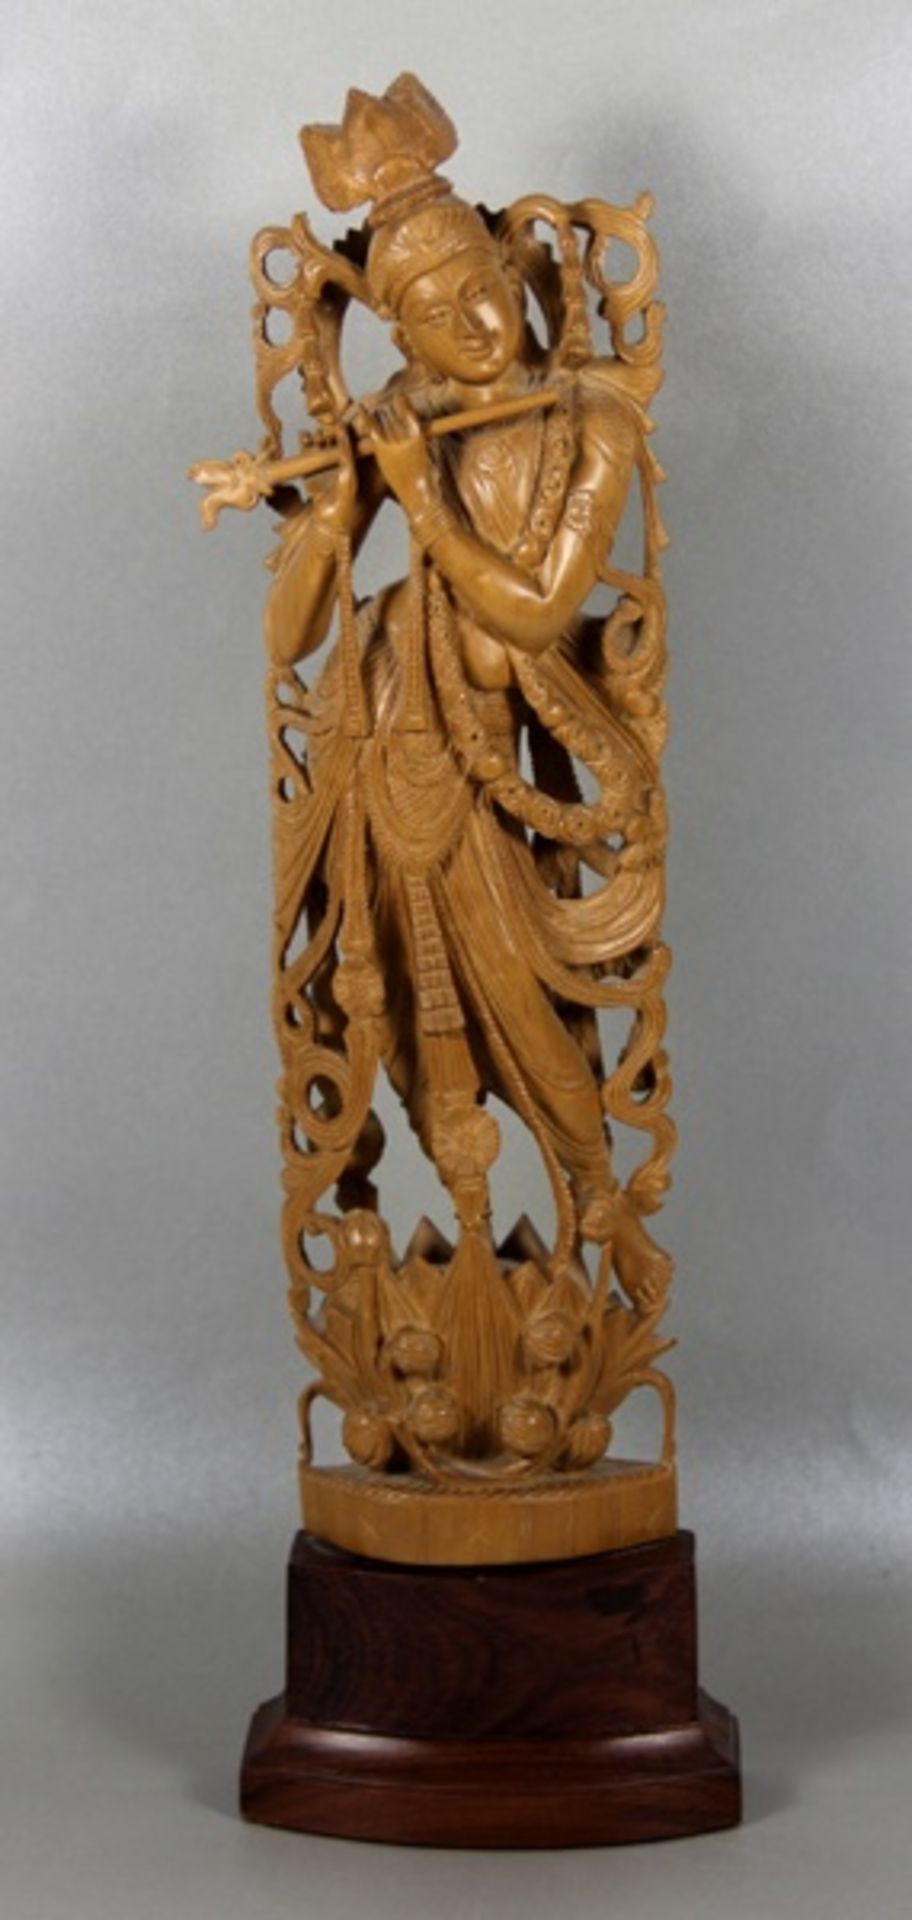 Krishna-SkulpturKrishna, durchbrochen u. detailreich geschnitzte Holzskulptur des Gottes mit der